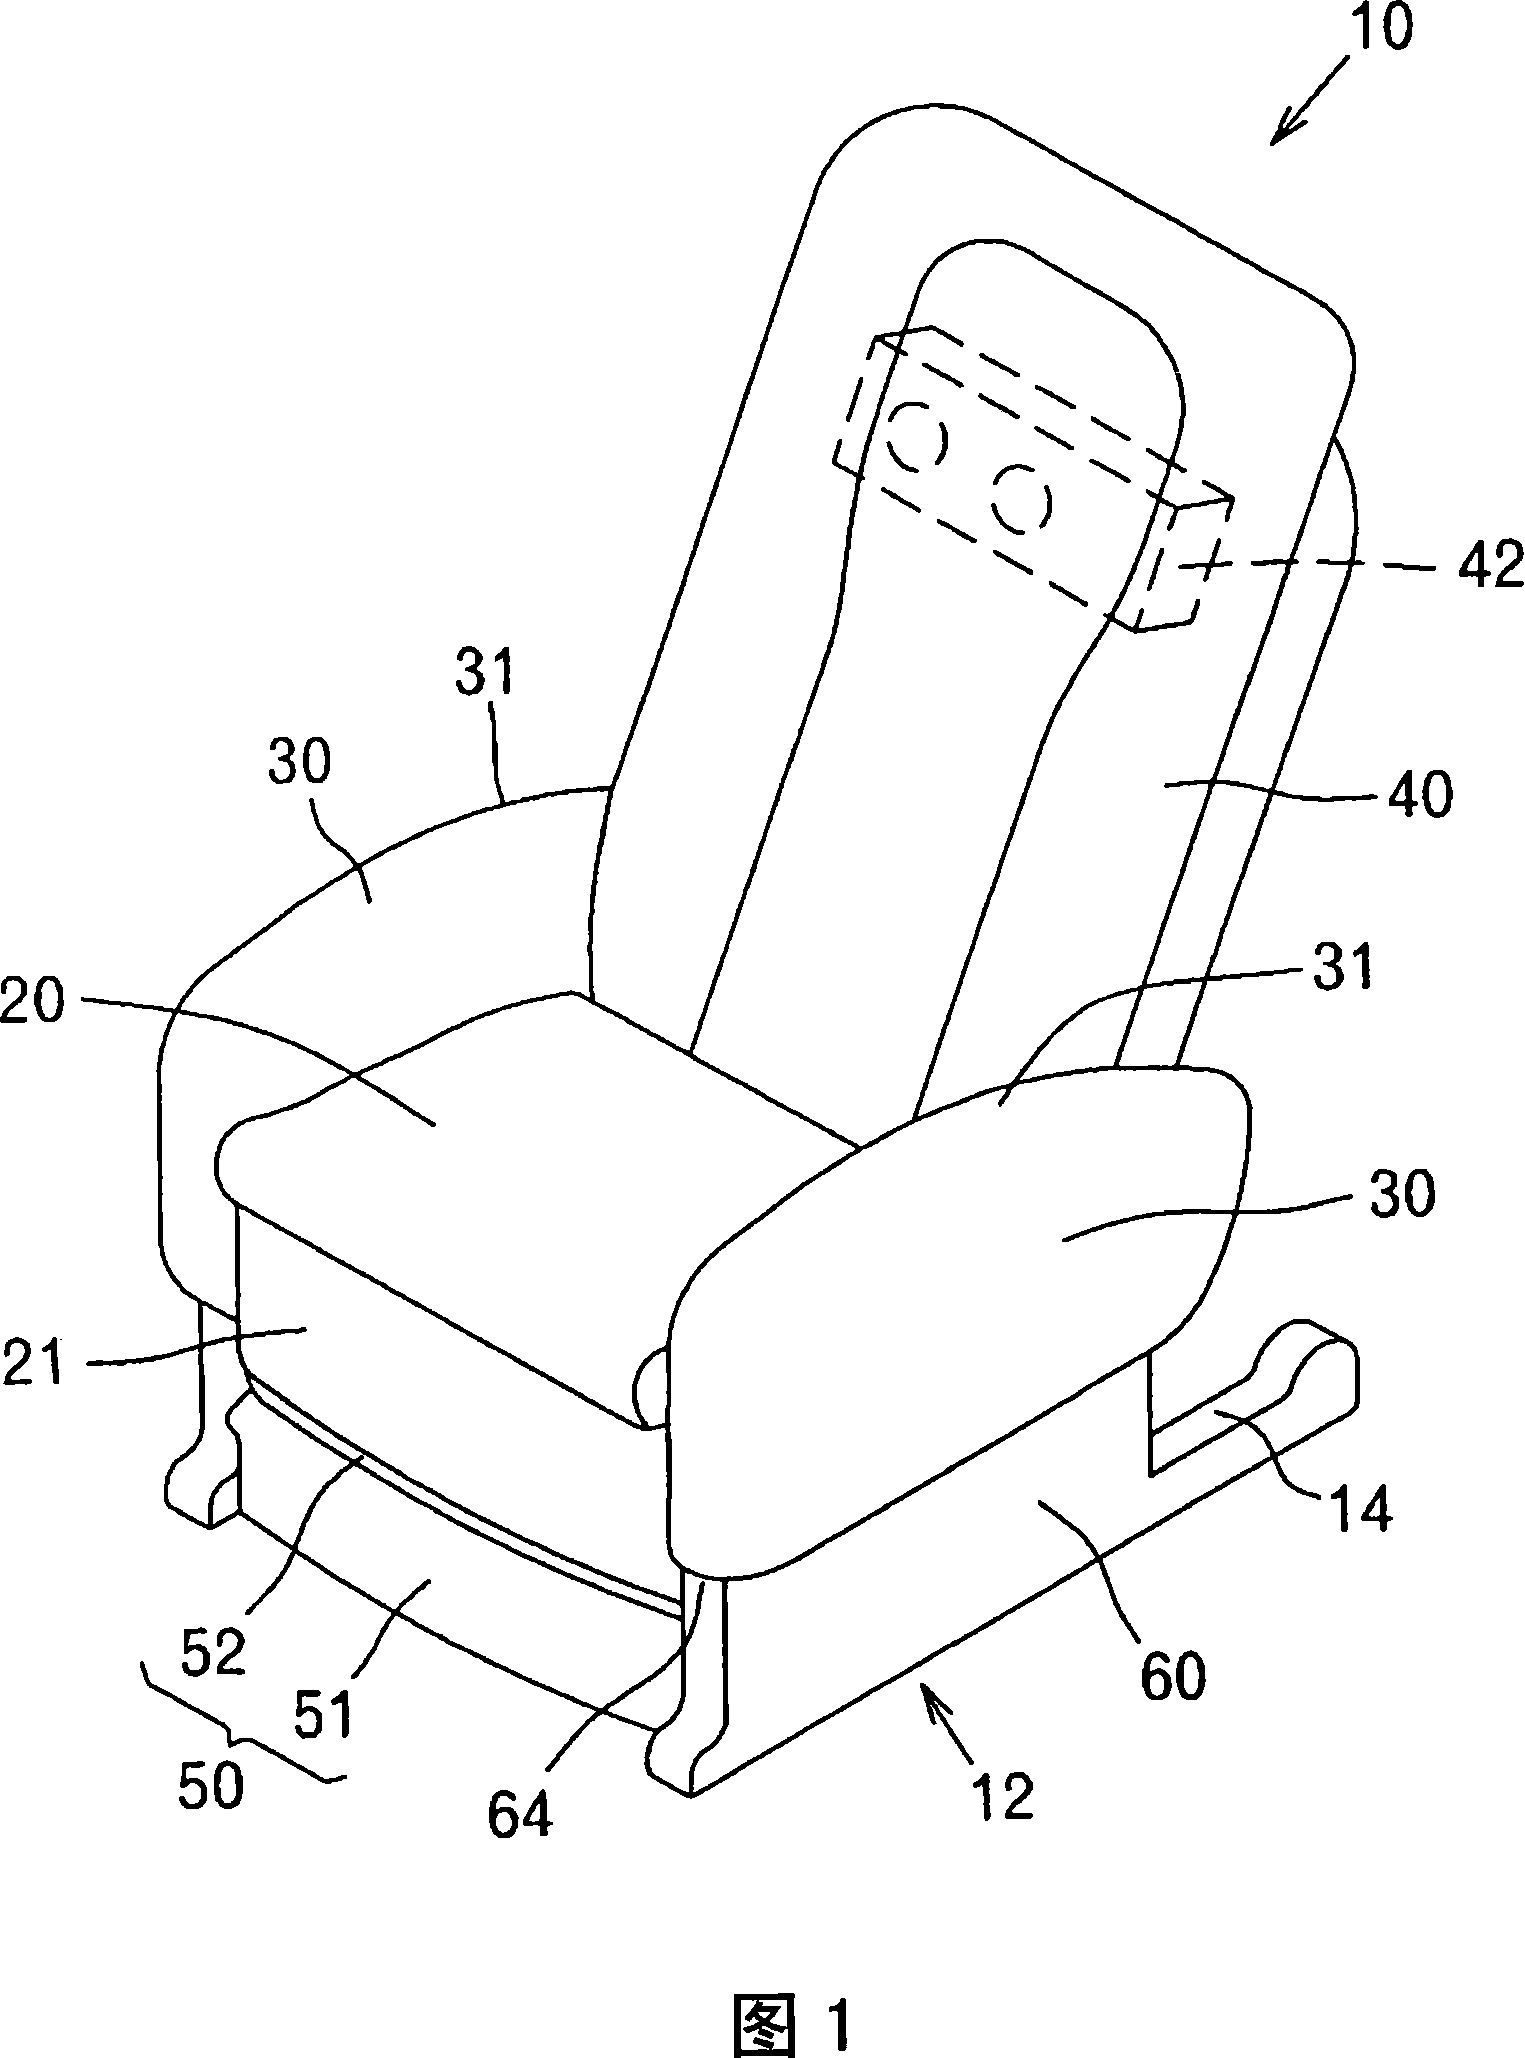 Chair type massaging machine